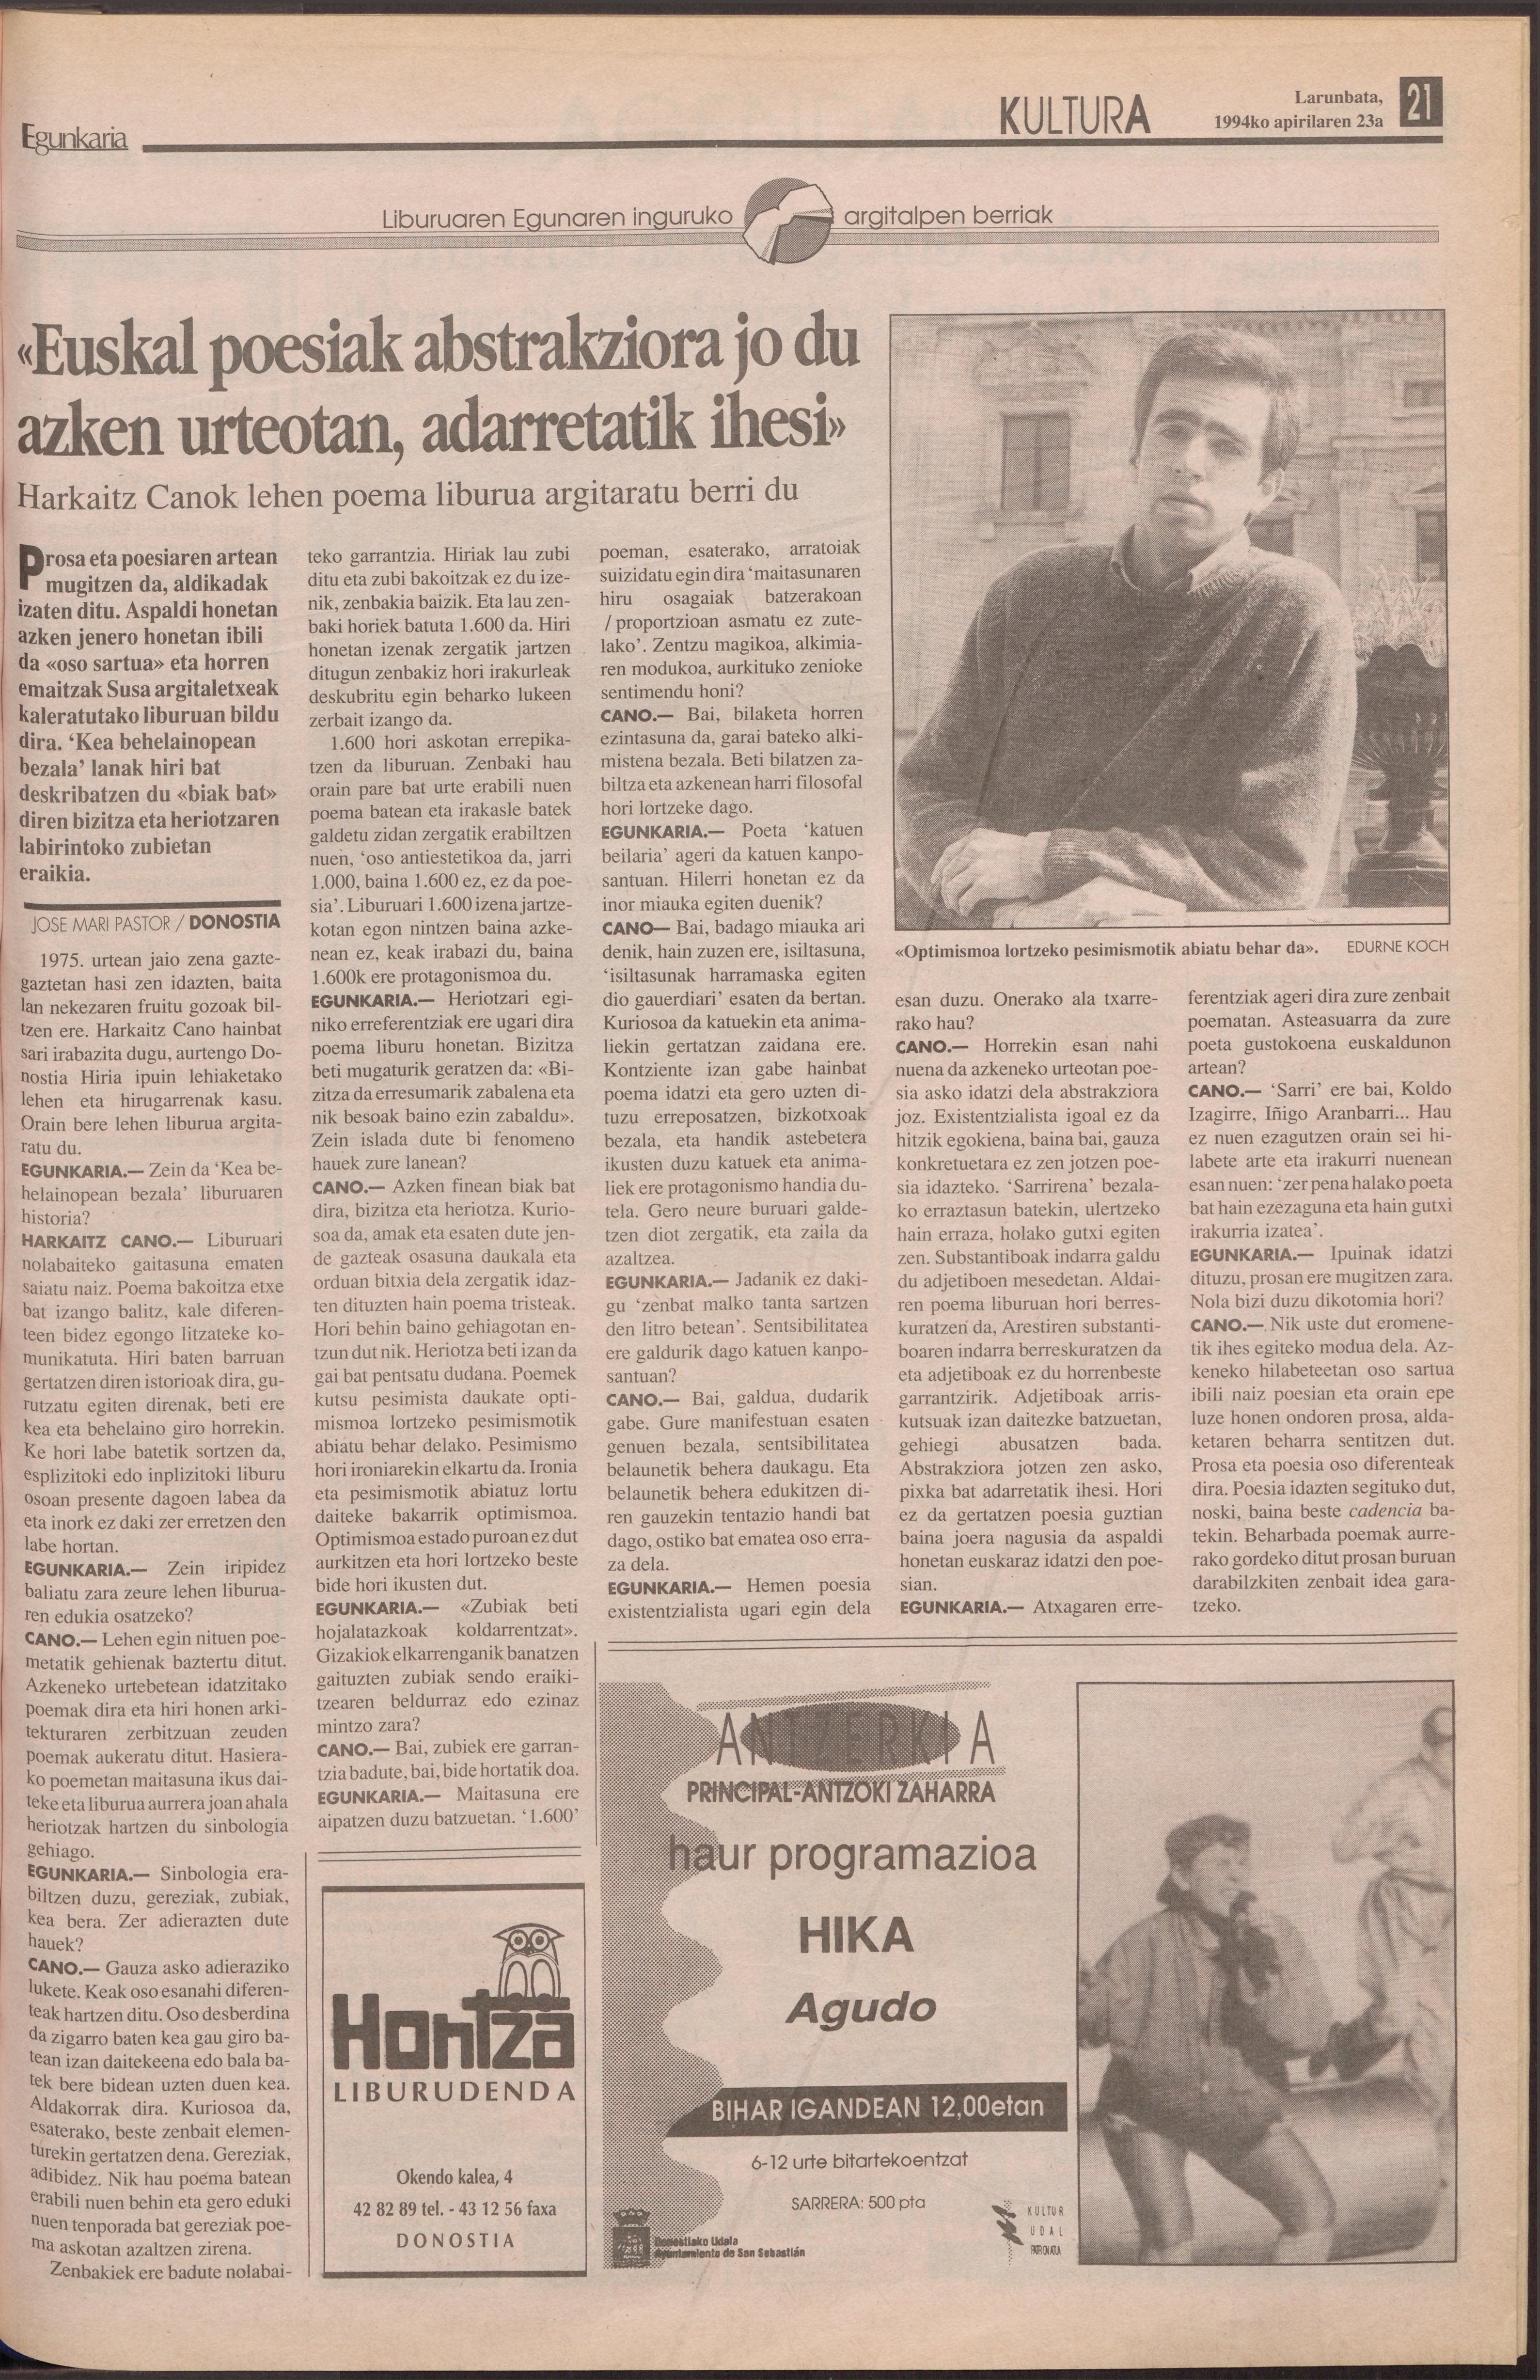 Harkaitz Cano idazleari elkarrizketa, 1994ko EGUNKARIAn